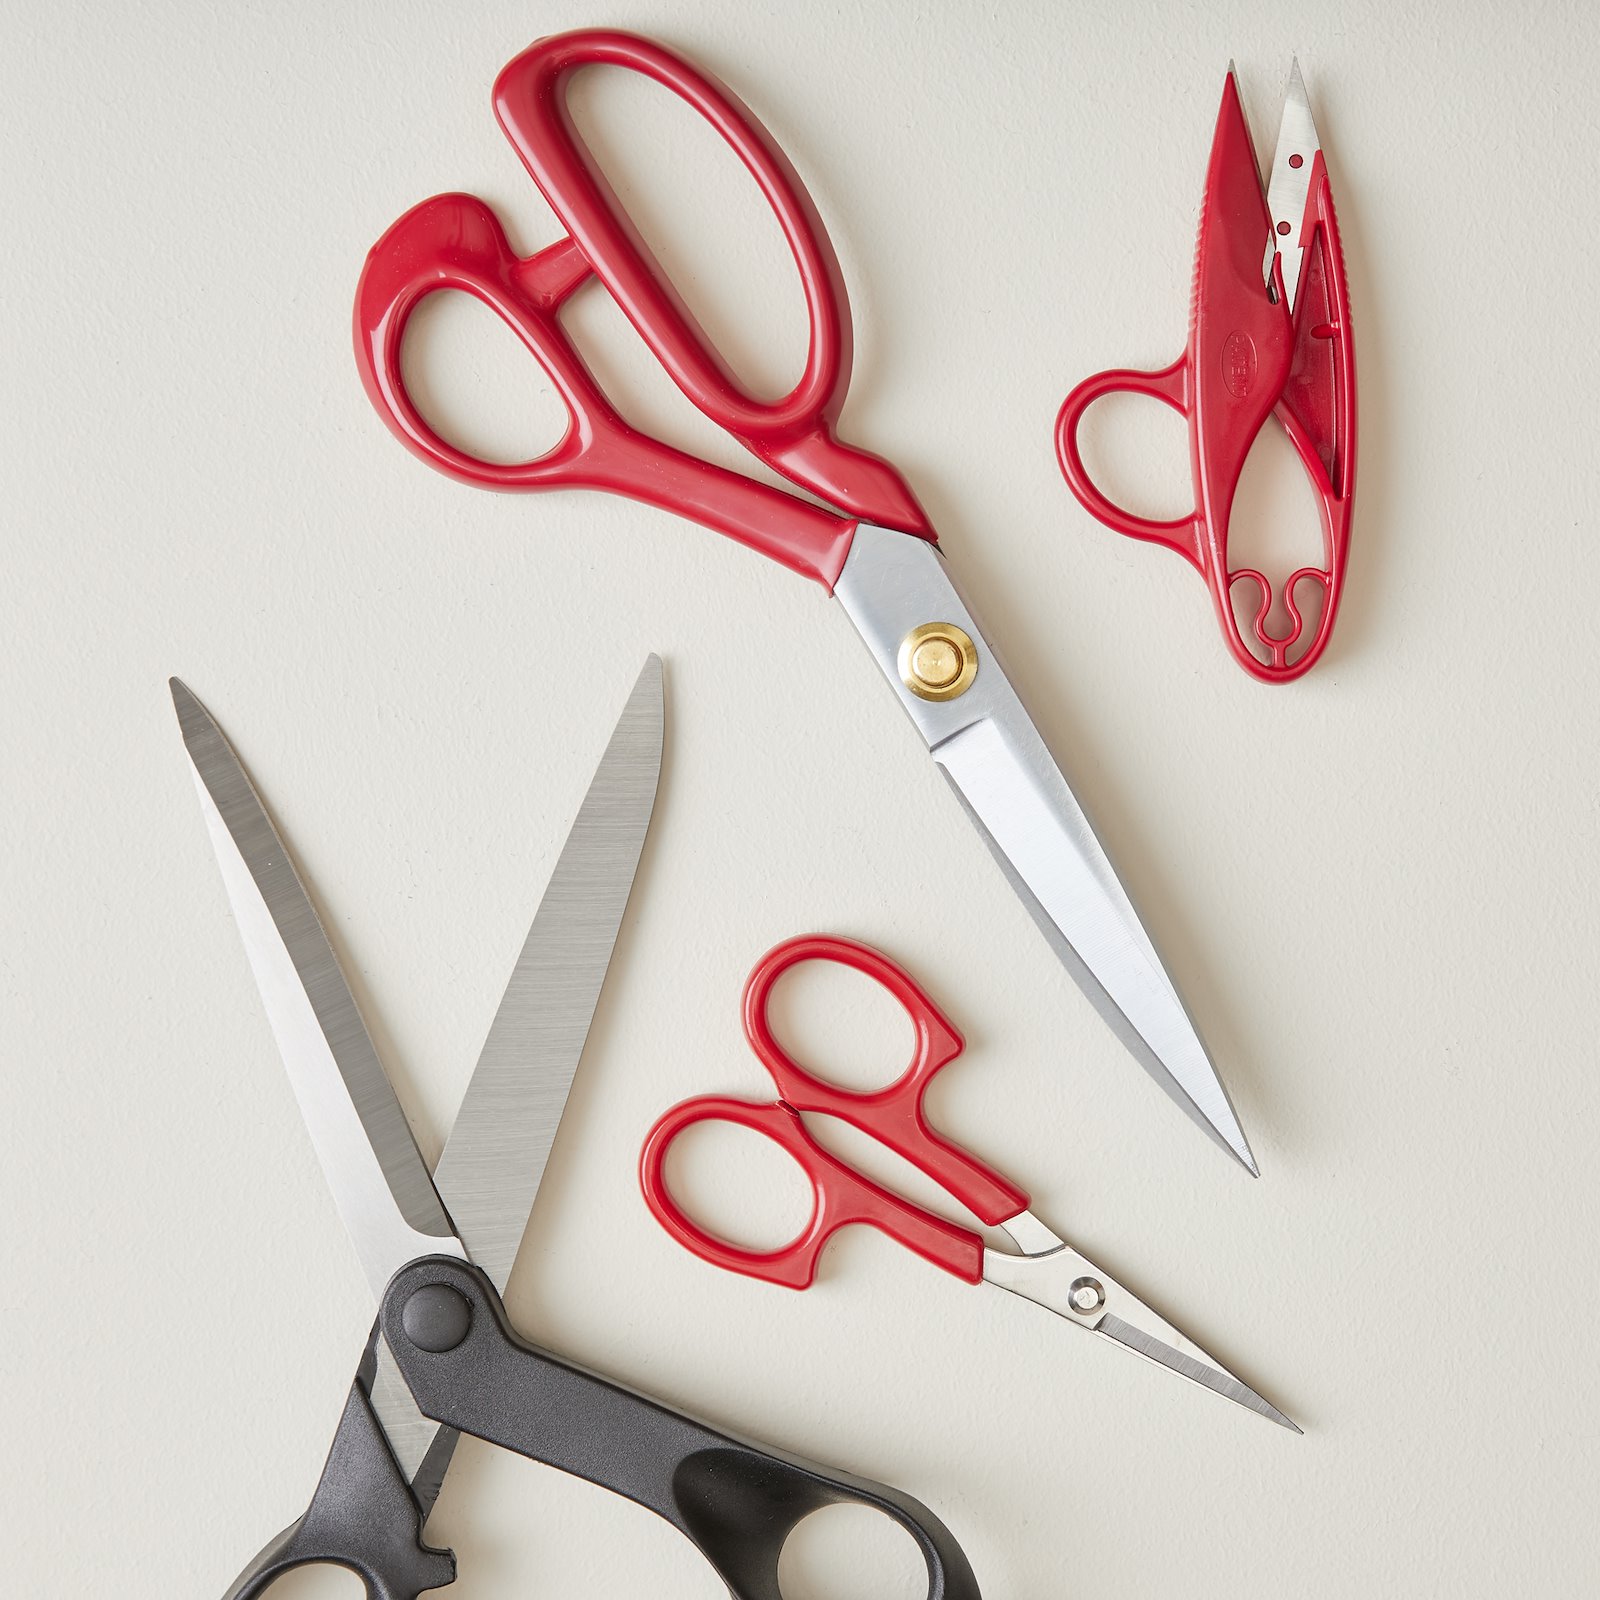 Tailors Fabric scissors 24cm 40013_42009_42011_42018_sskit